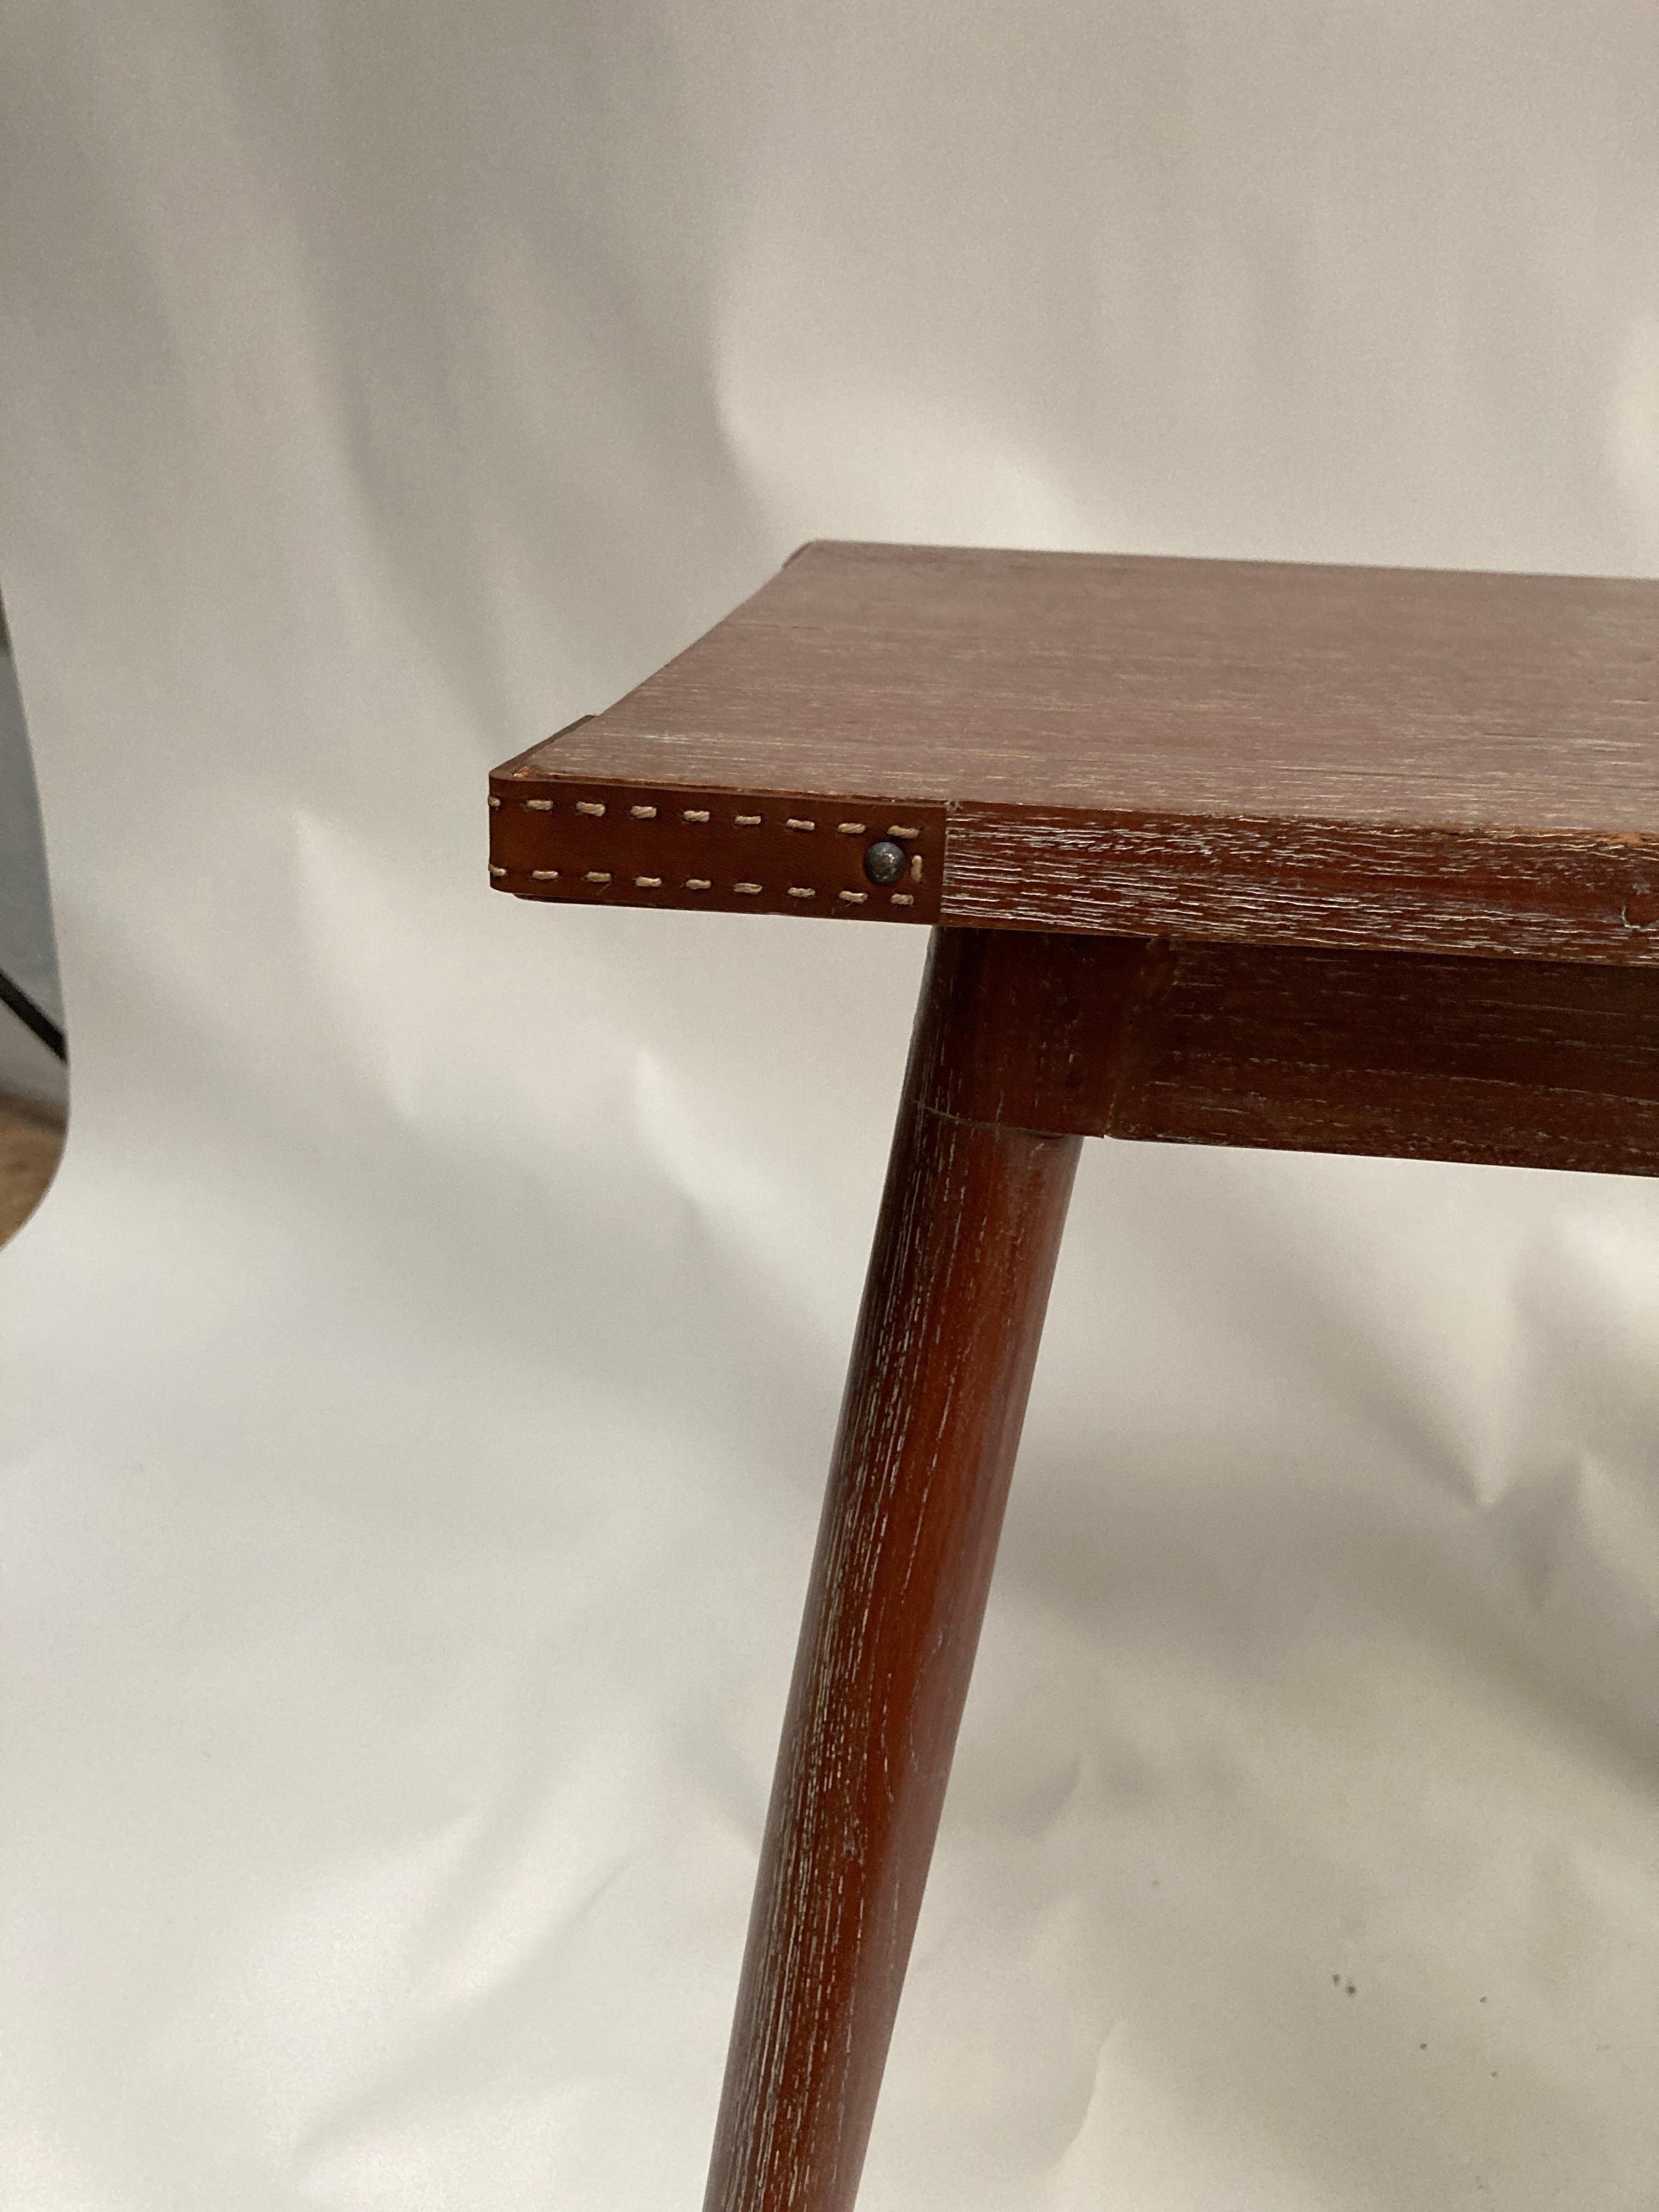 Rare table en cuir piqué et chêne des années 50 par Jacques Adnet

France